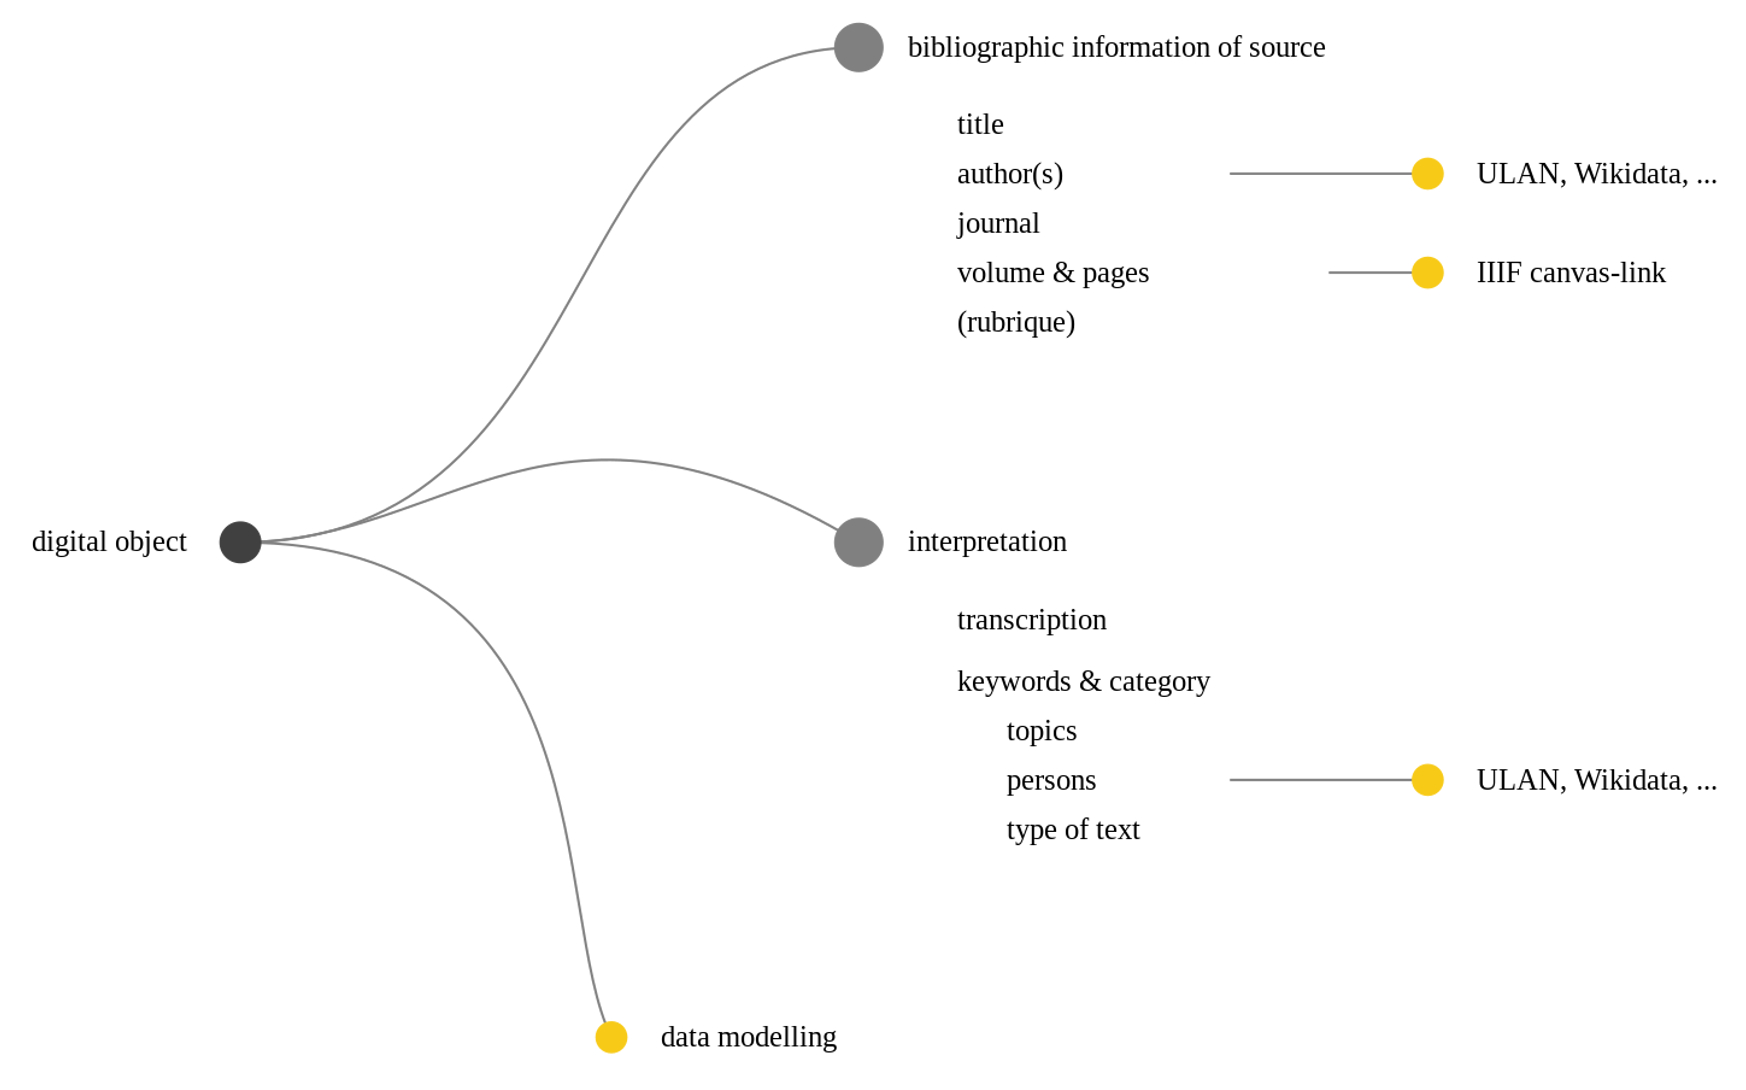 Events (hier in Gelb) als Aktivitäten, die nur auf bestimmte Bereiche des Digitalen Objekts gerichtet sind.